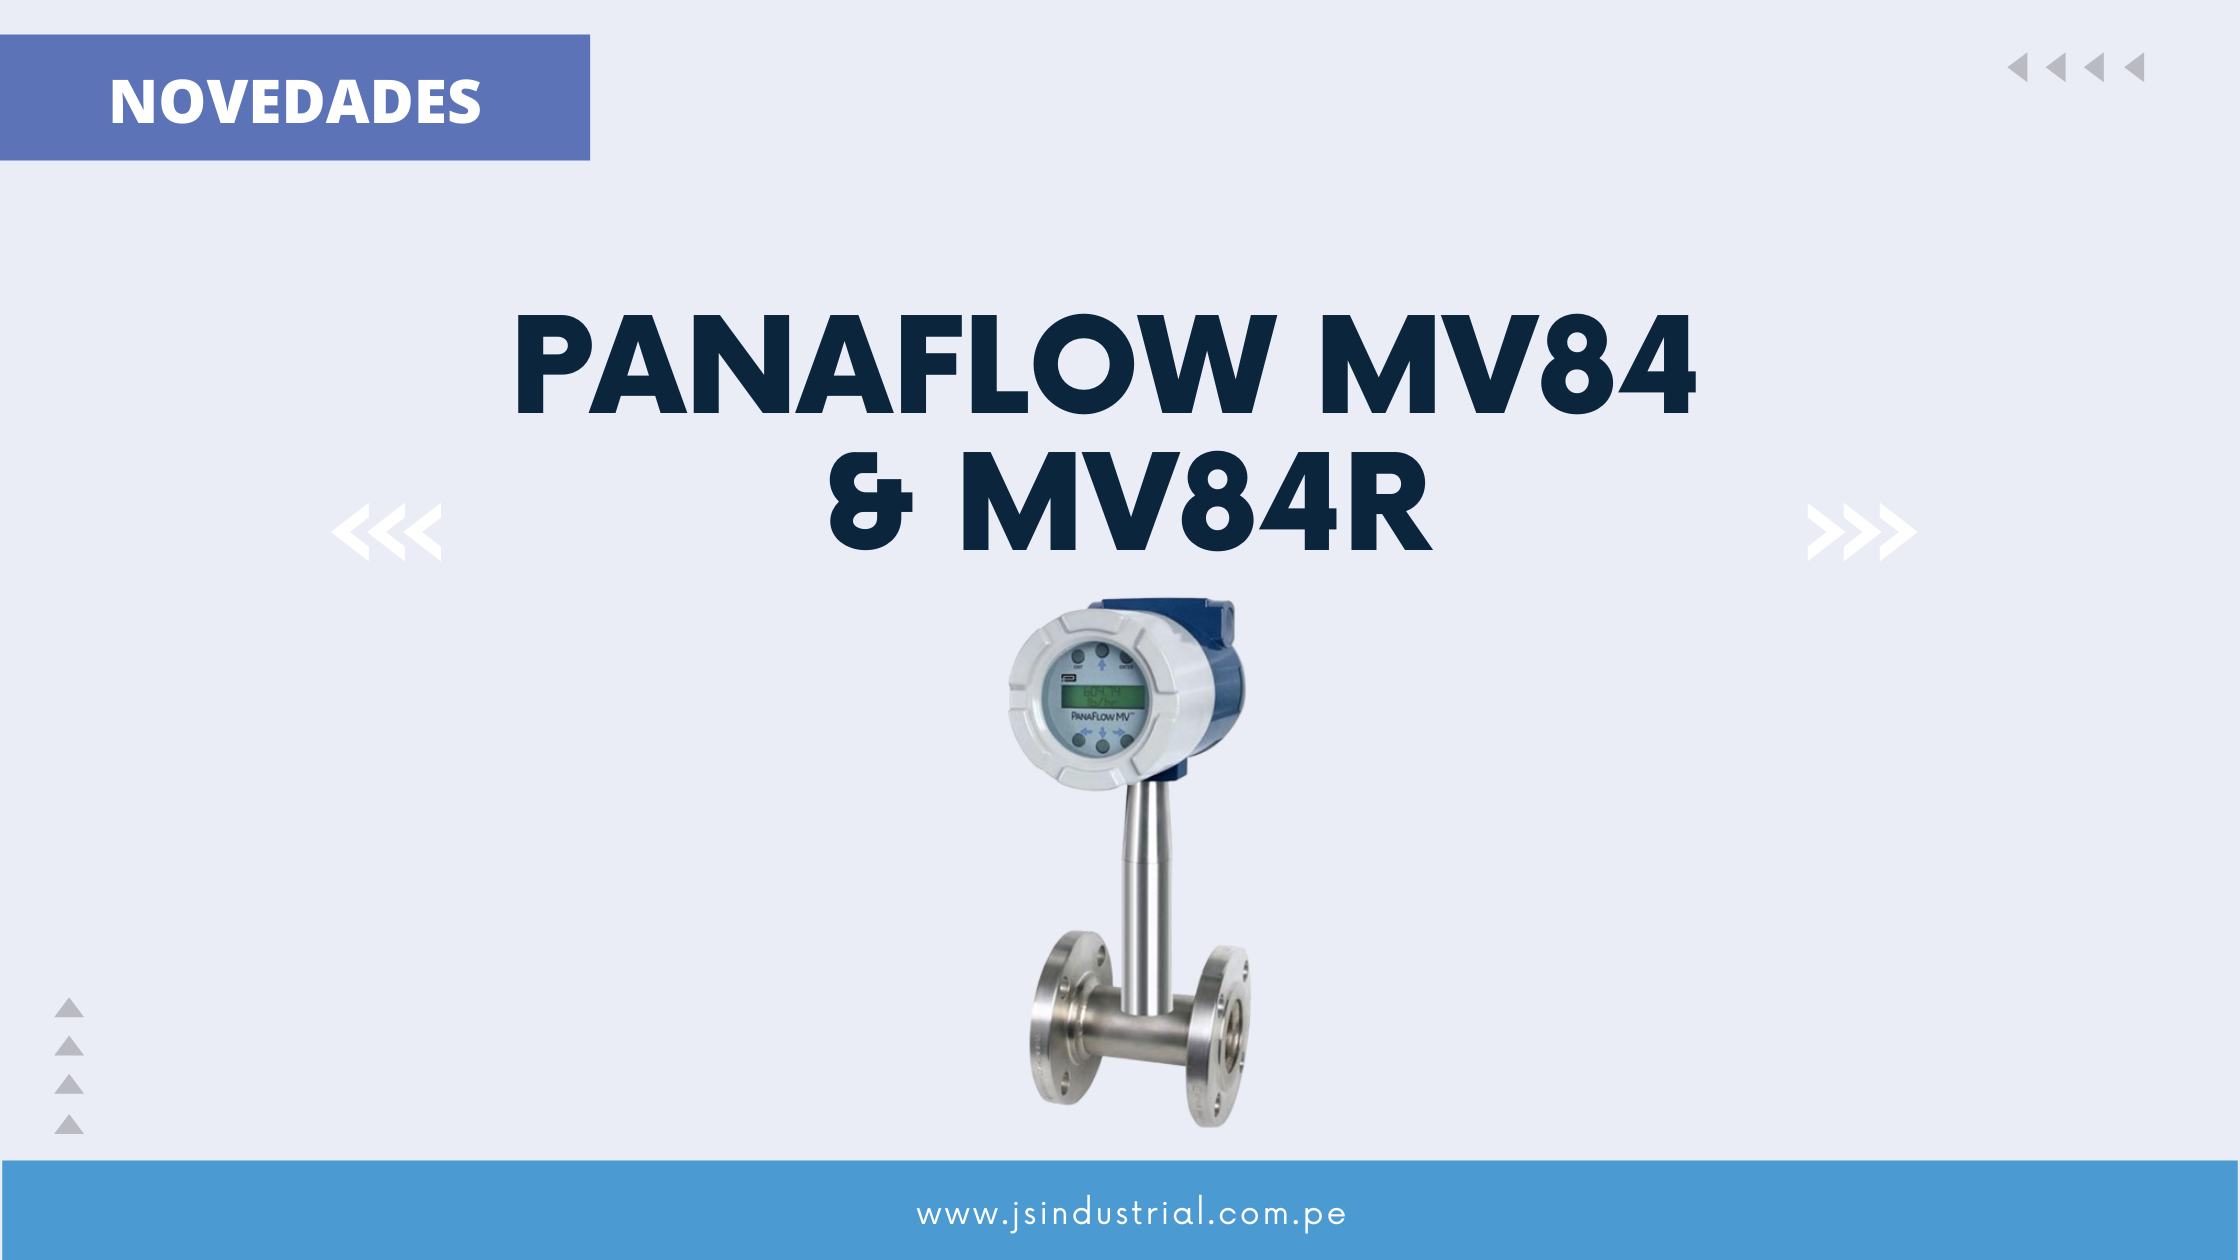 Actualización de Producto – PanaFlow MV84 & MV84R